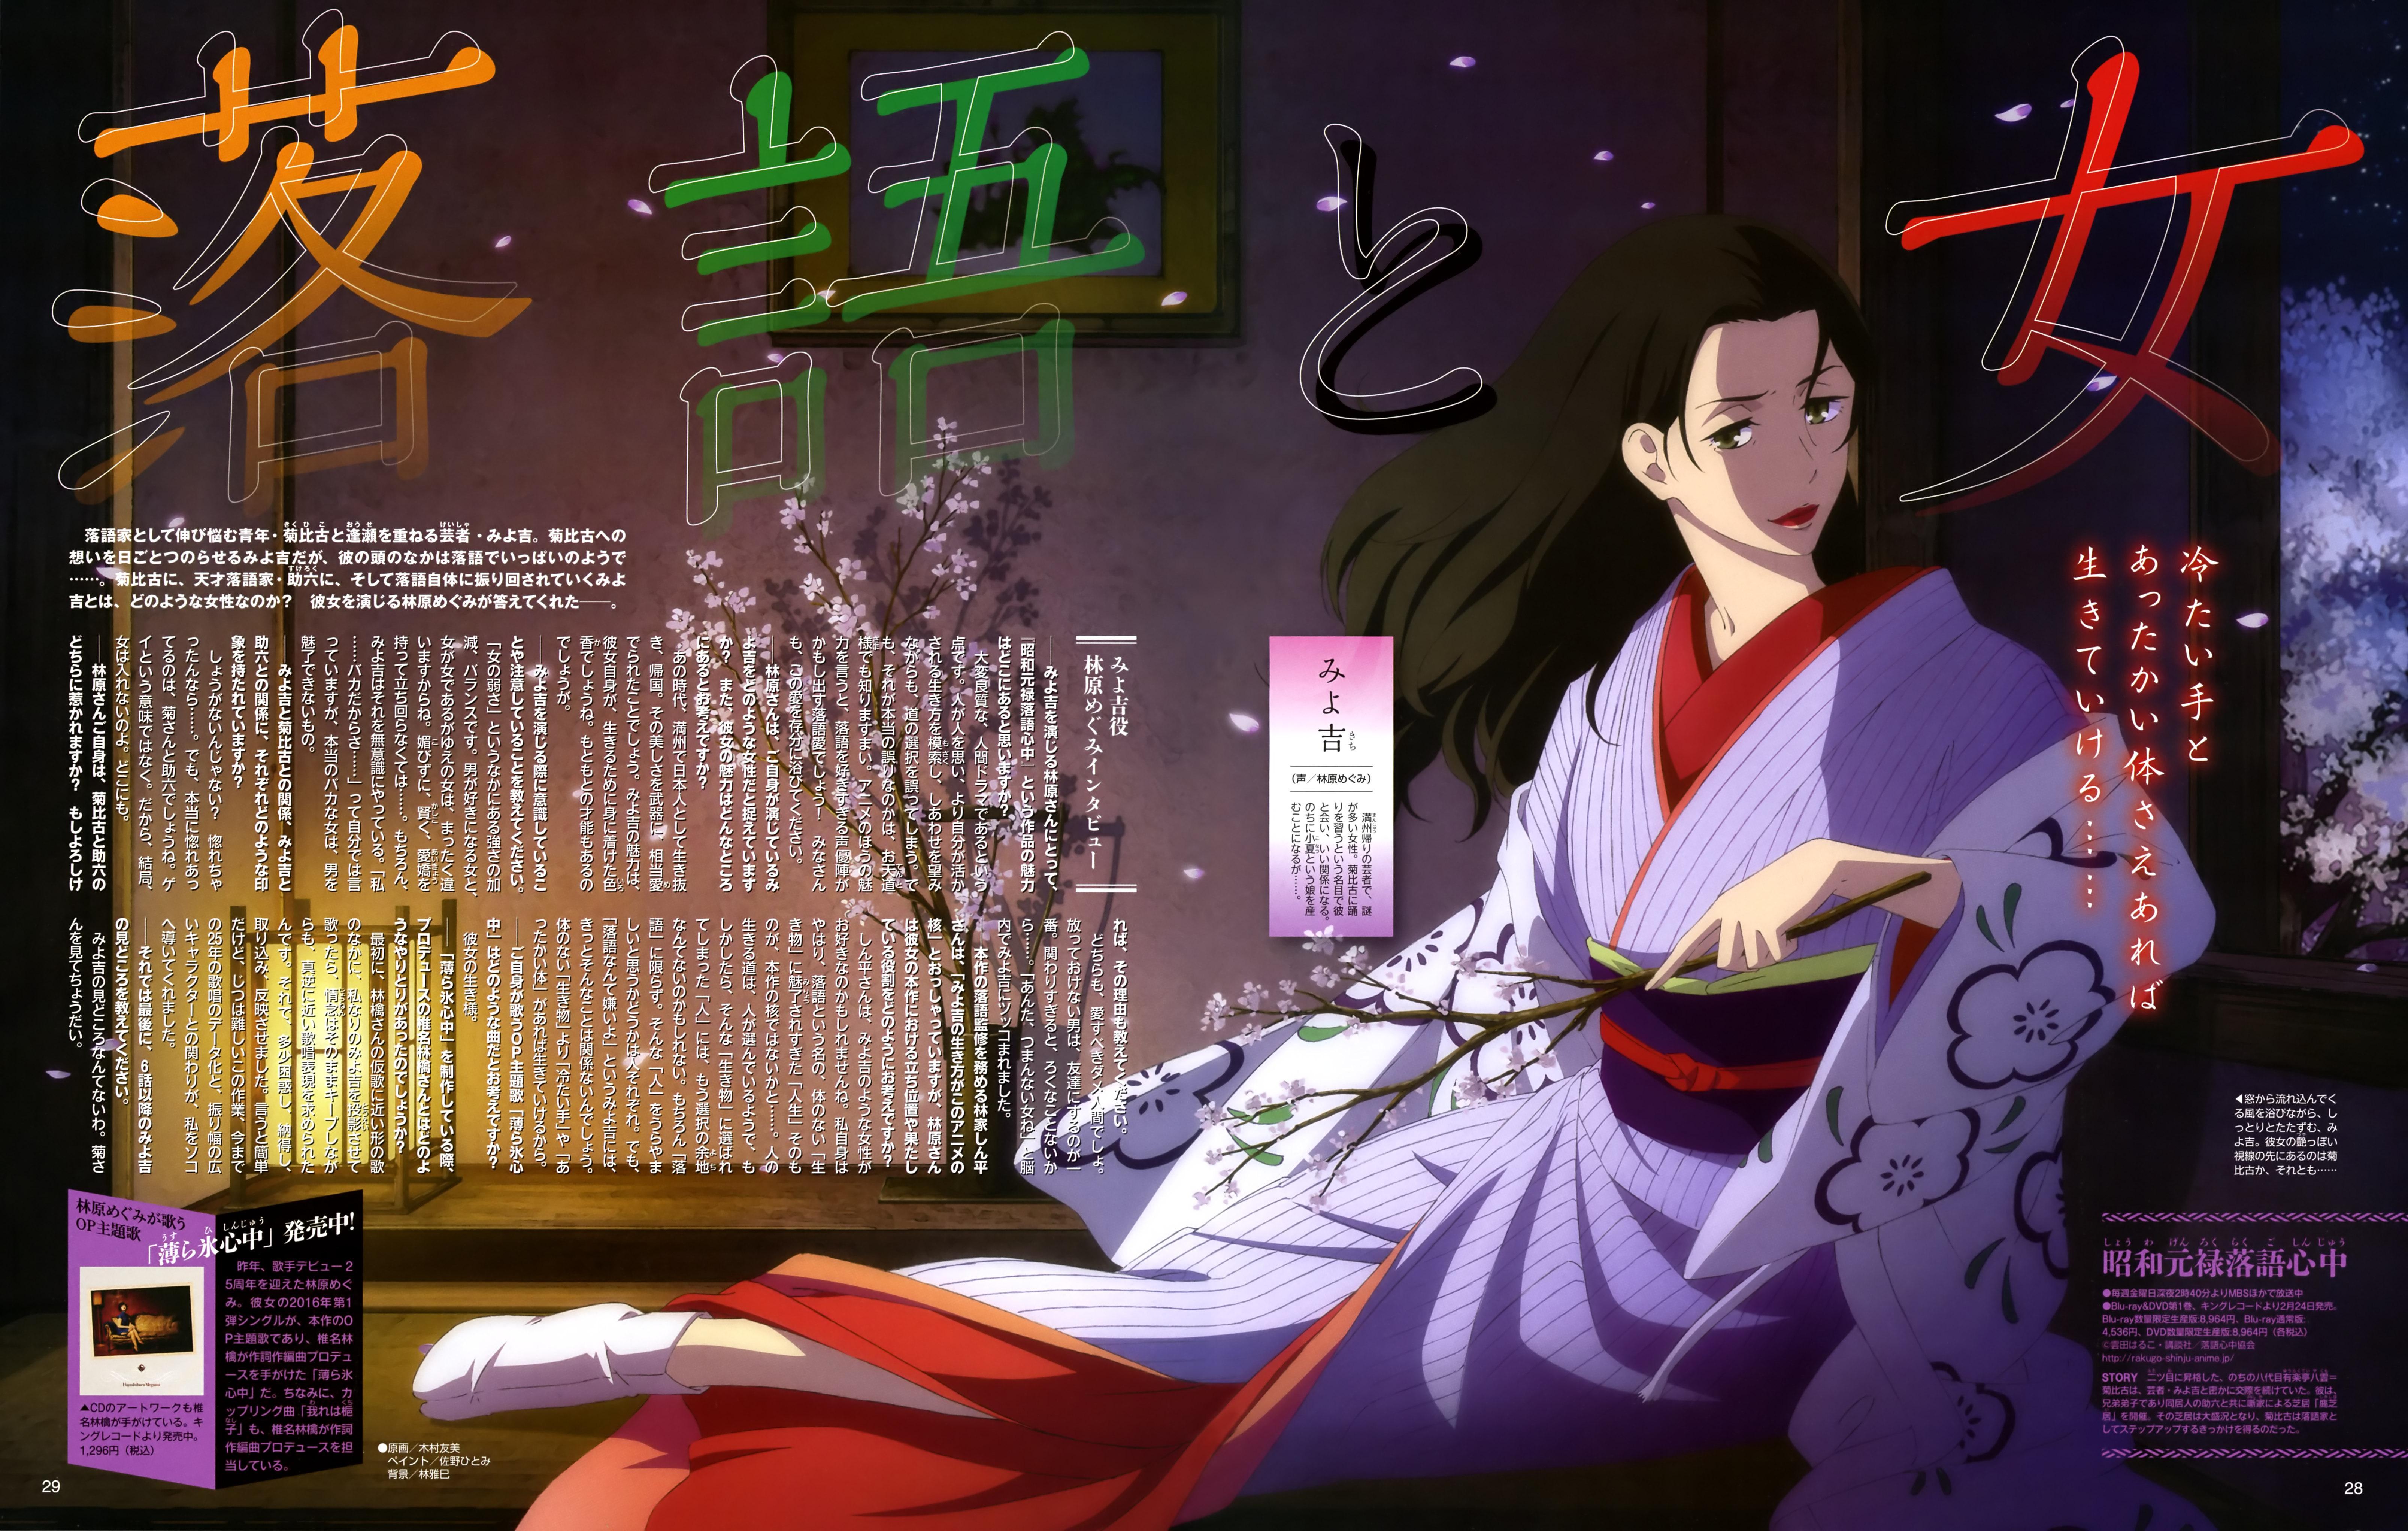 Descending Stories Showa Genroku Rakugo Shinju Wallpaper Download, Descending Stories Showa Genroku Rakugo Shinju, Anime